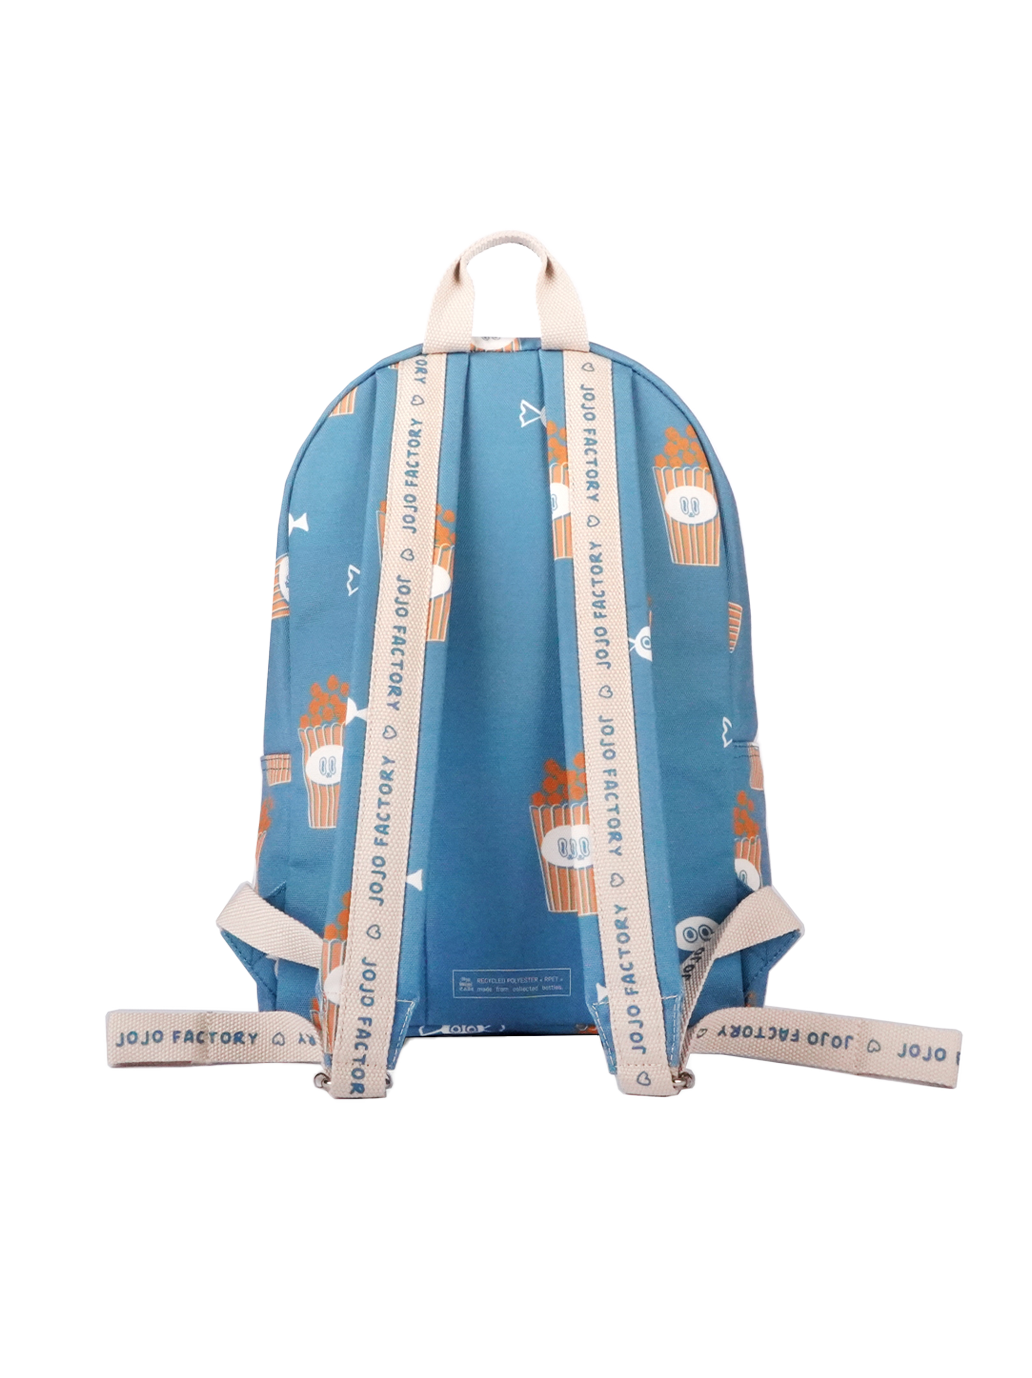 Dětský batoh Cool pack